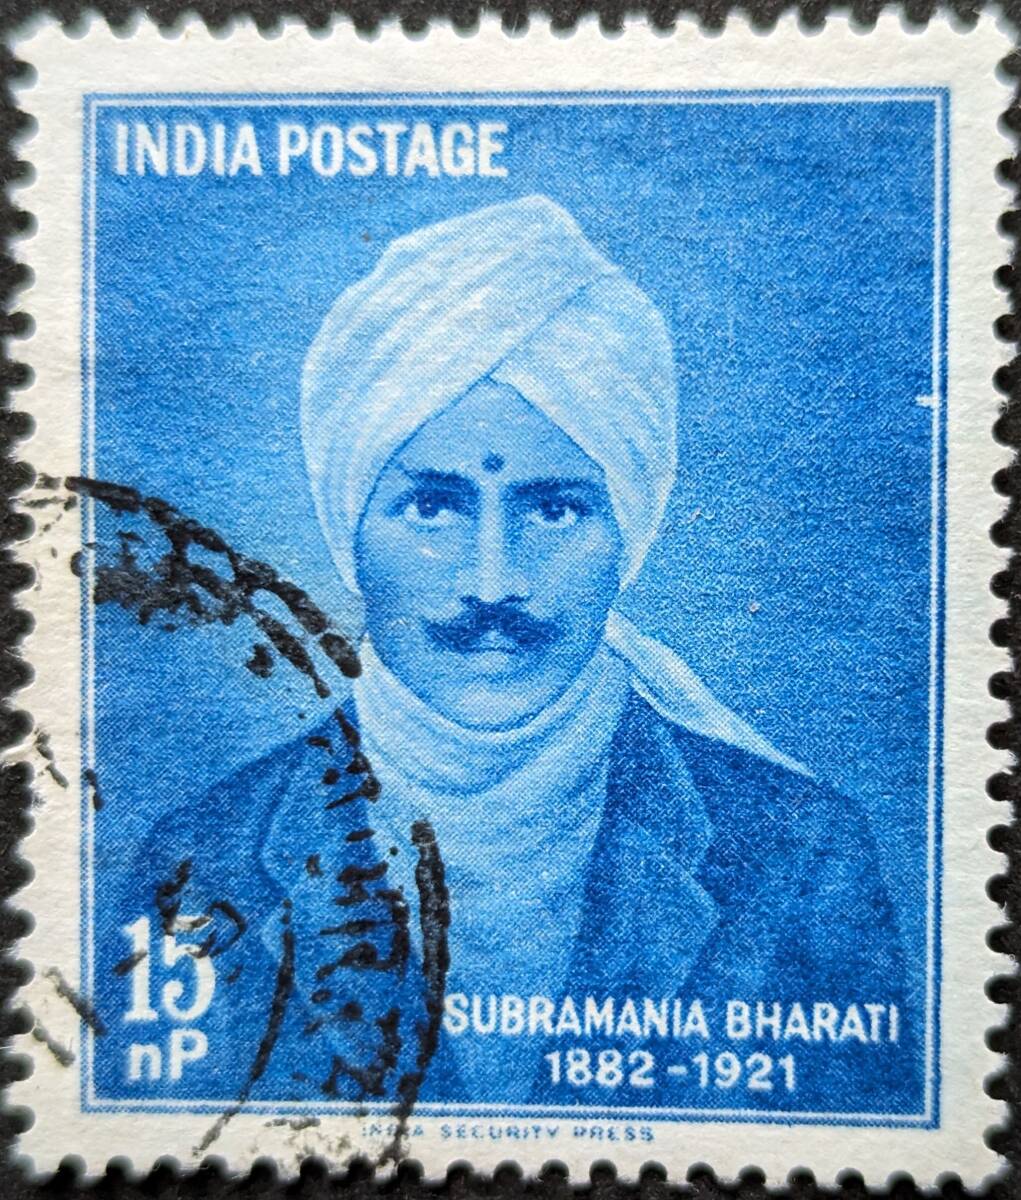 【外国切手】 インド 1960年09月11日 発行 スブラマニア・バラティ記念 ティルヴァルヴァル (哲学者) 消印付き_画像1